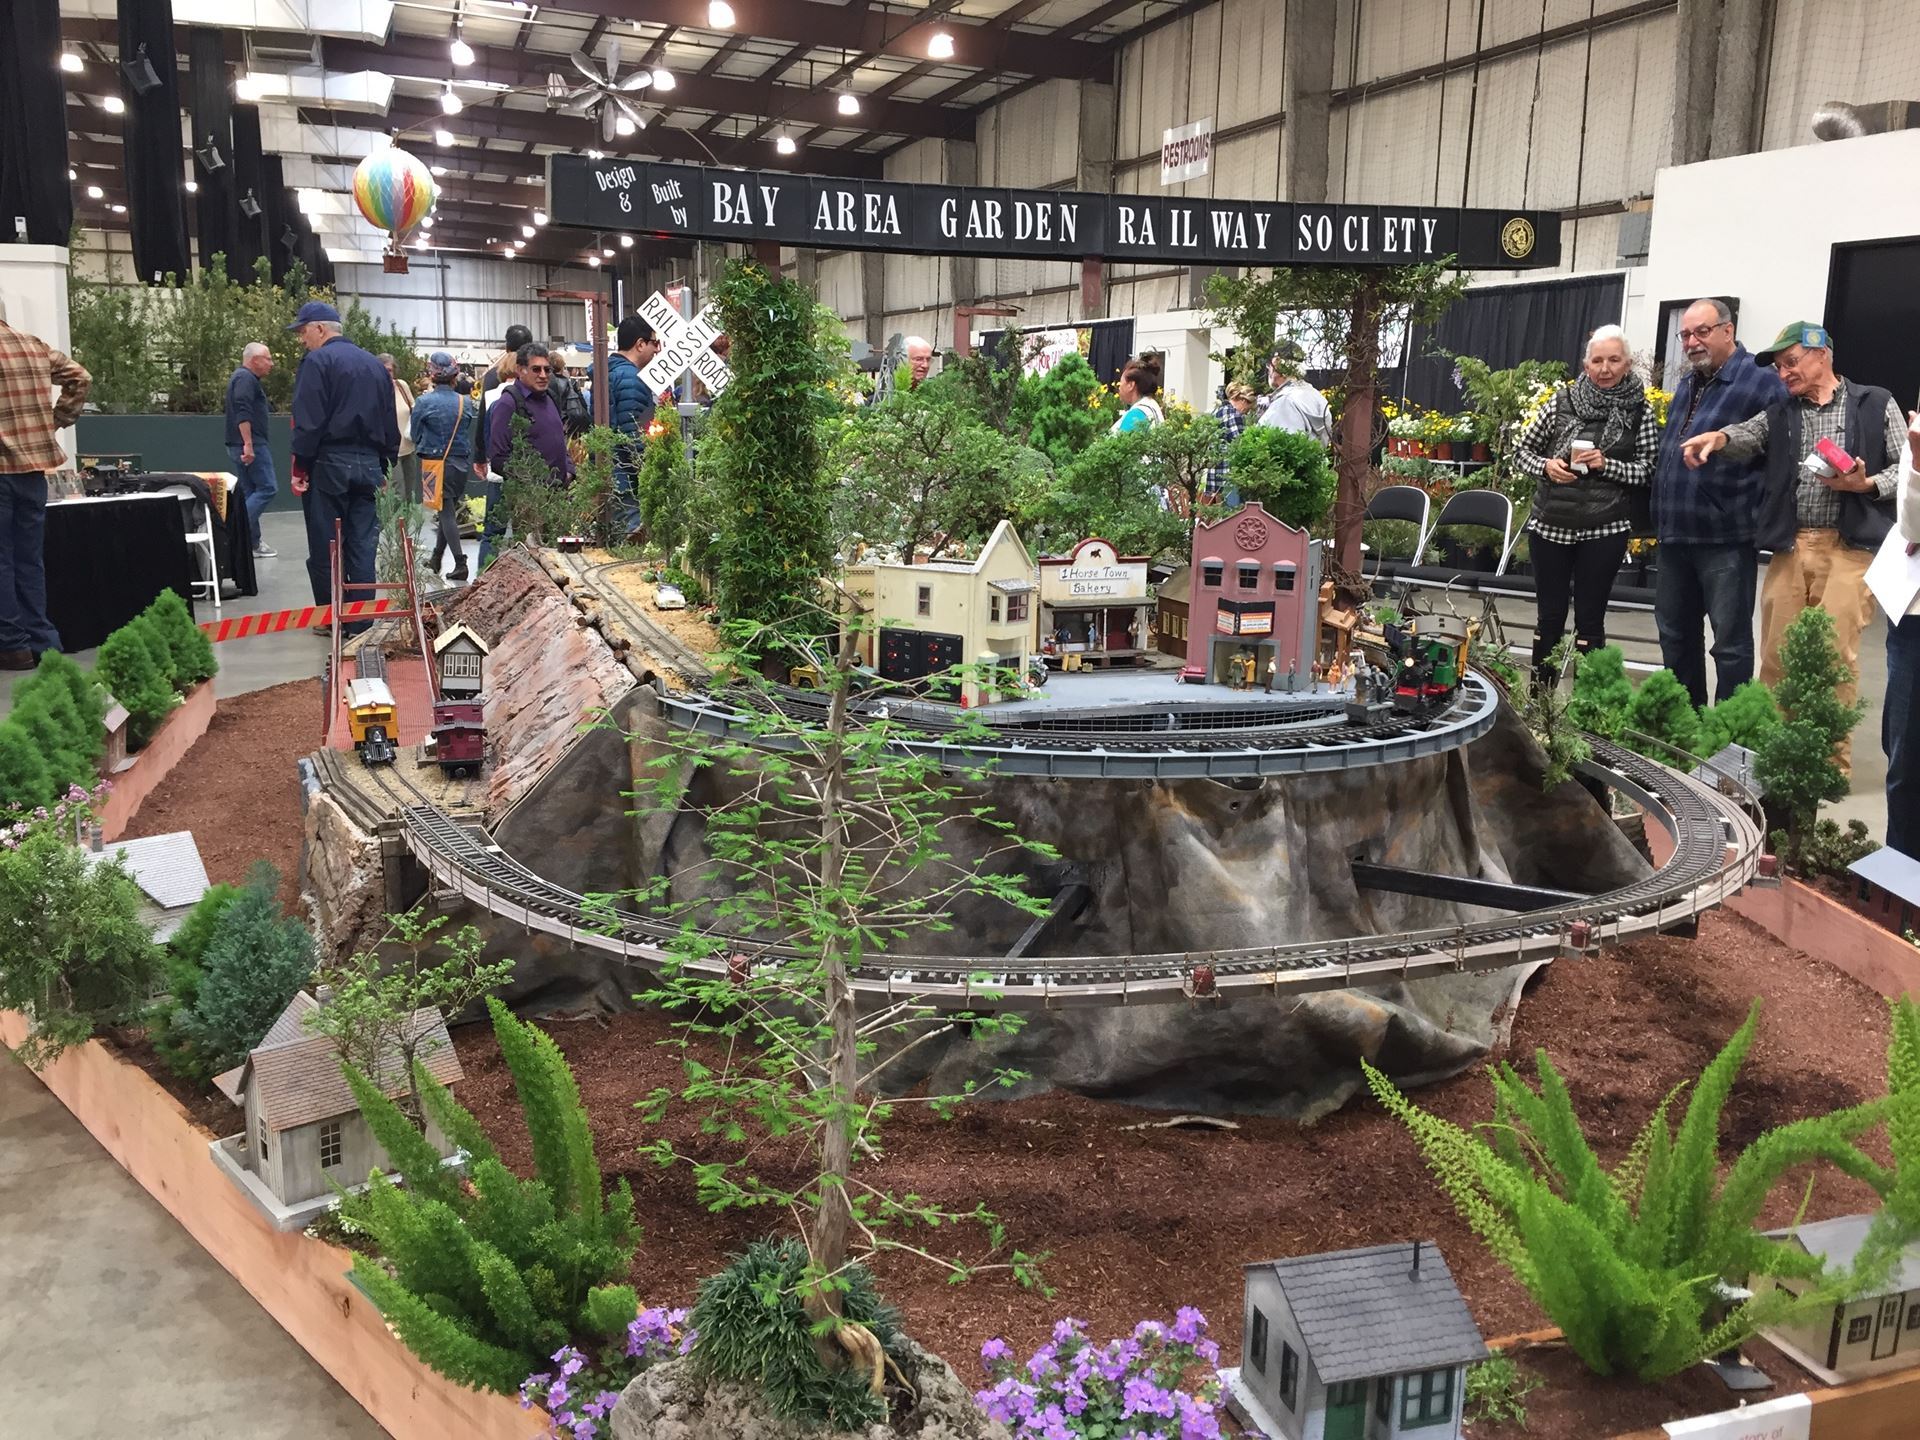 bay area garden railway society - 2017 sf flower & garden show